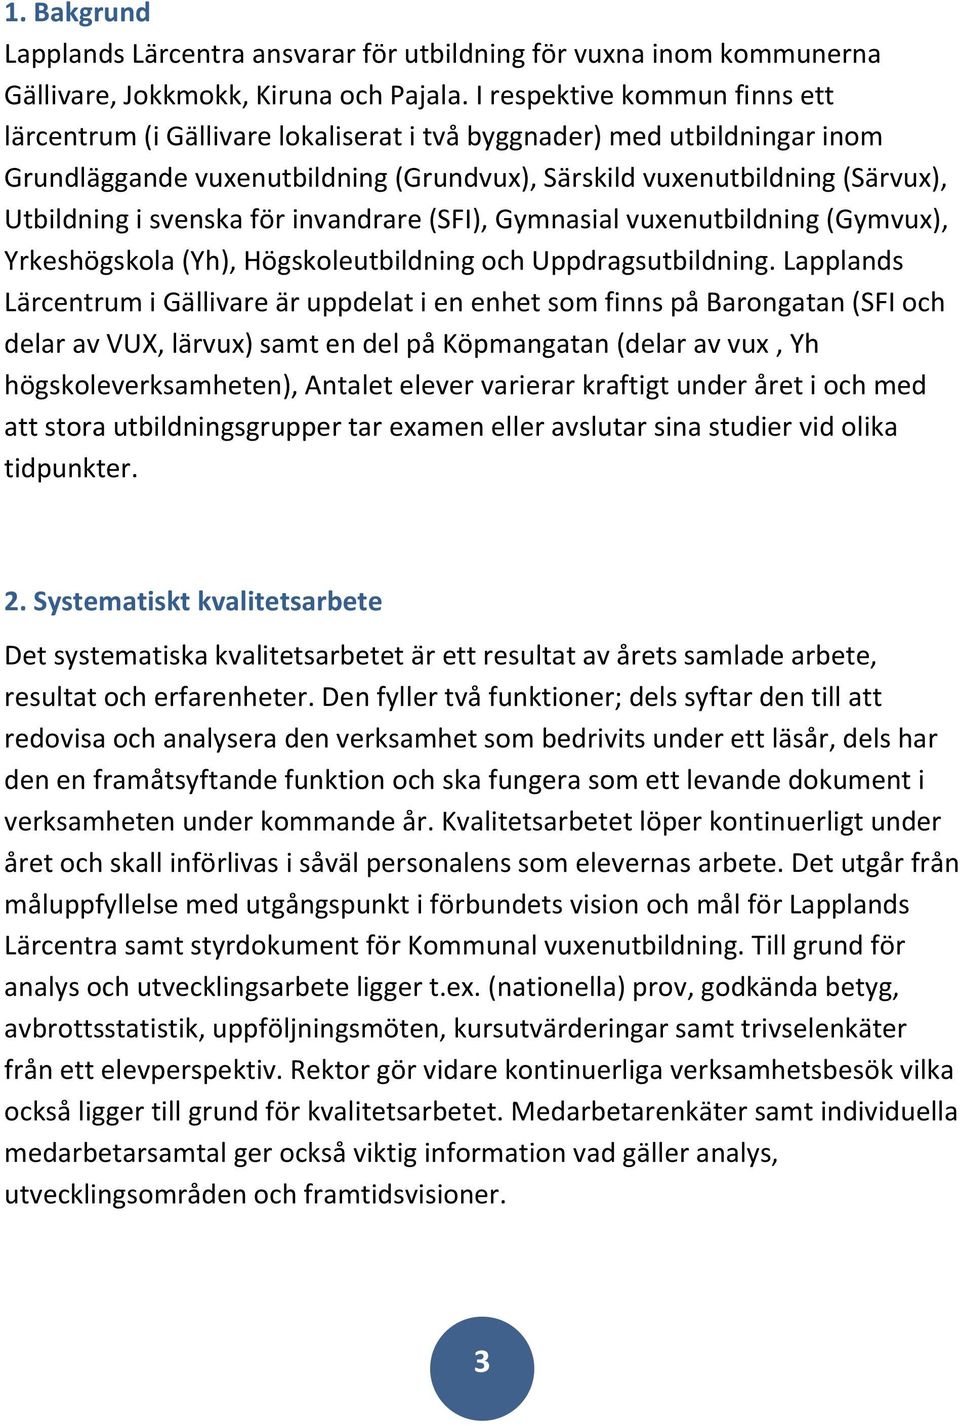 svenska för invandrare (SFI), Gymnasial vuxenutbildning (Gymvux), Yrkeshögskola (Yh), Högskoleutbildning och Uppdragsutbildning.